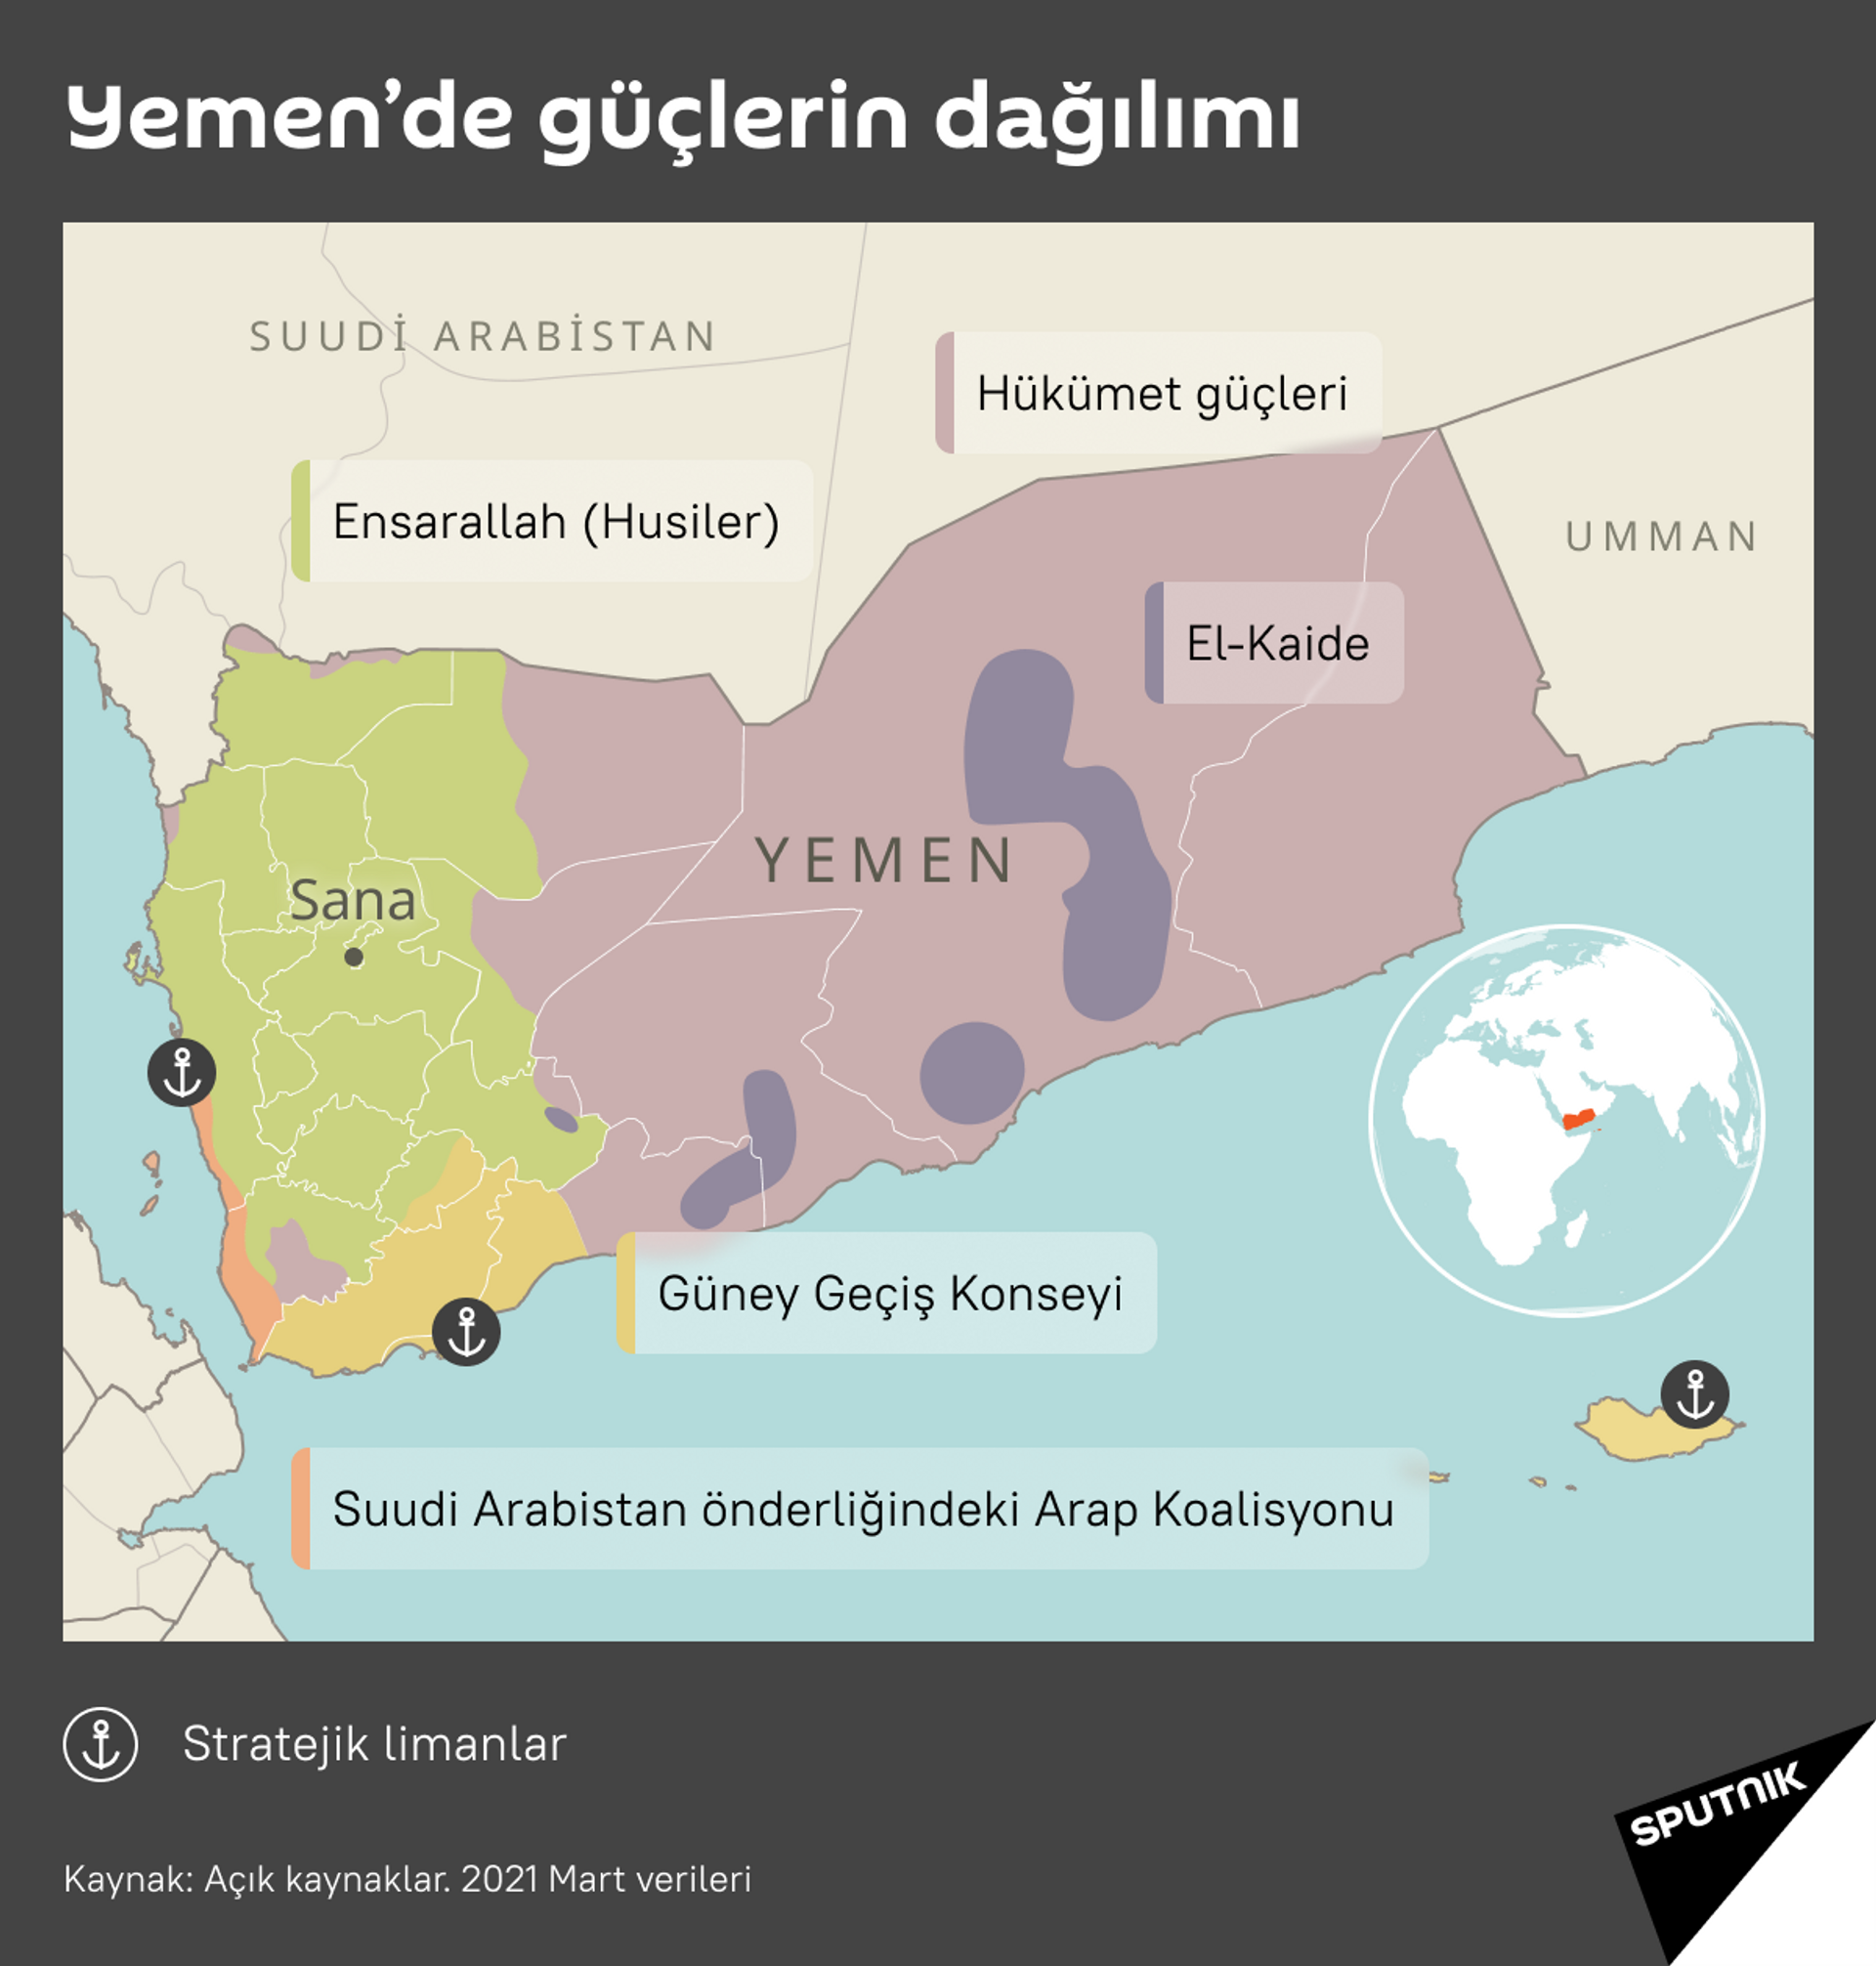 Yemen’deki güç dengesi ve insani felaket - Sputnik Türkiye, 1920, 02.04.2021